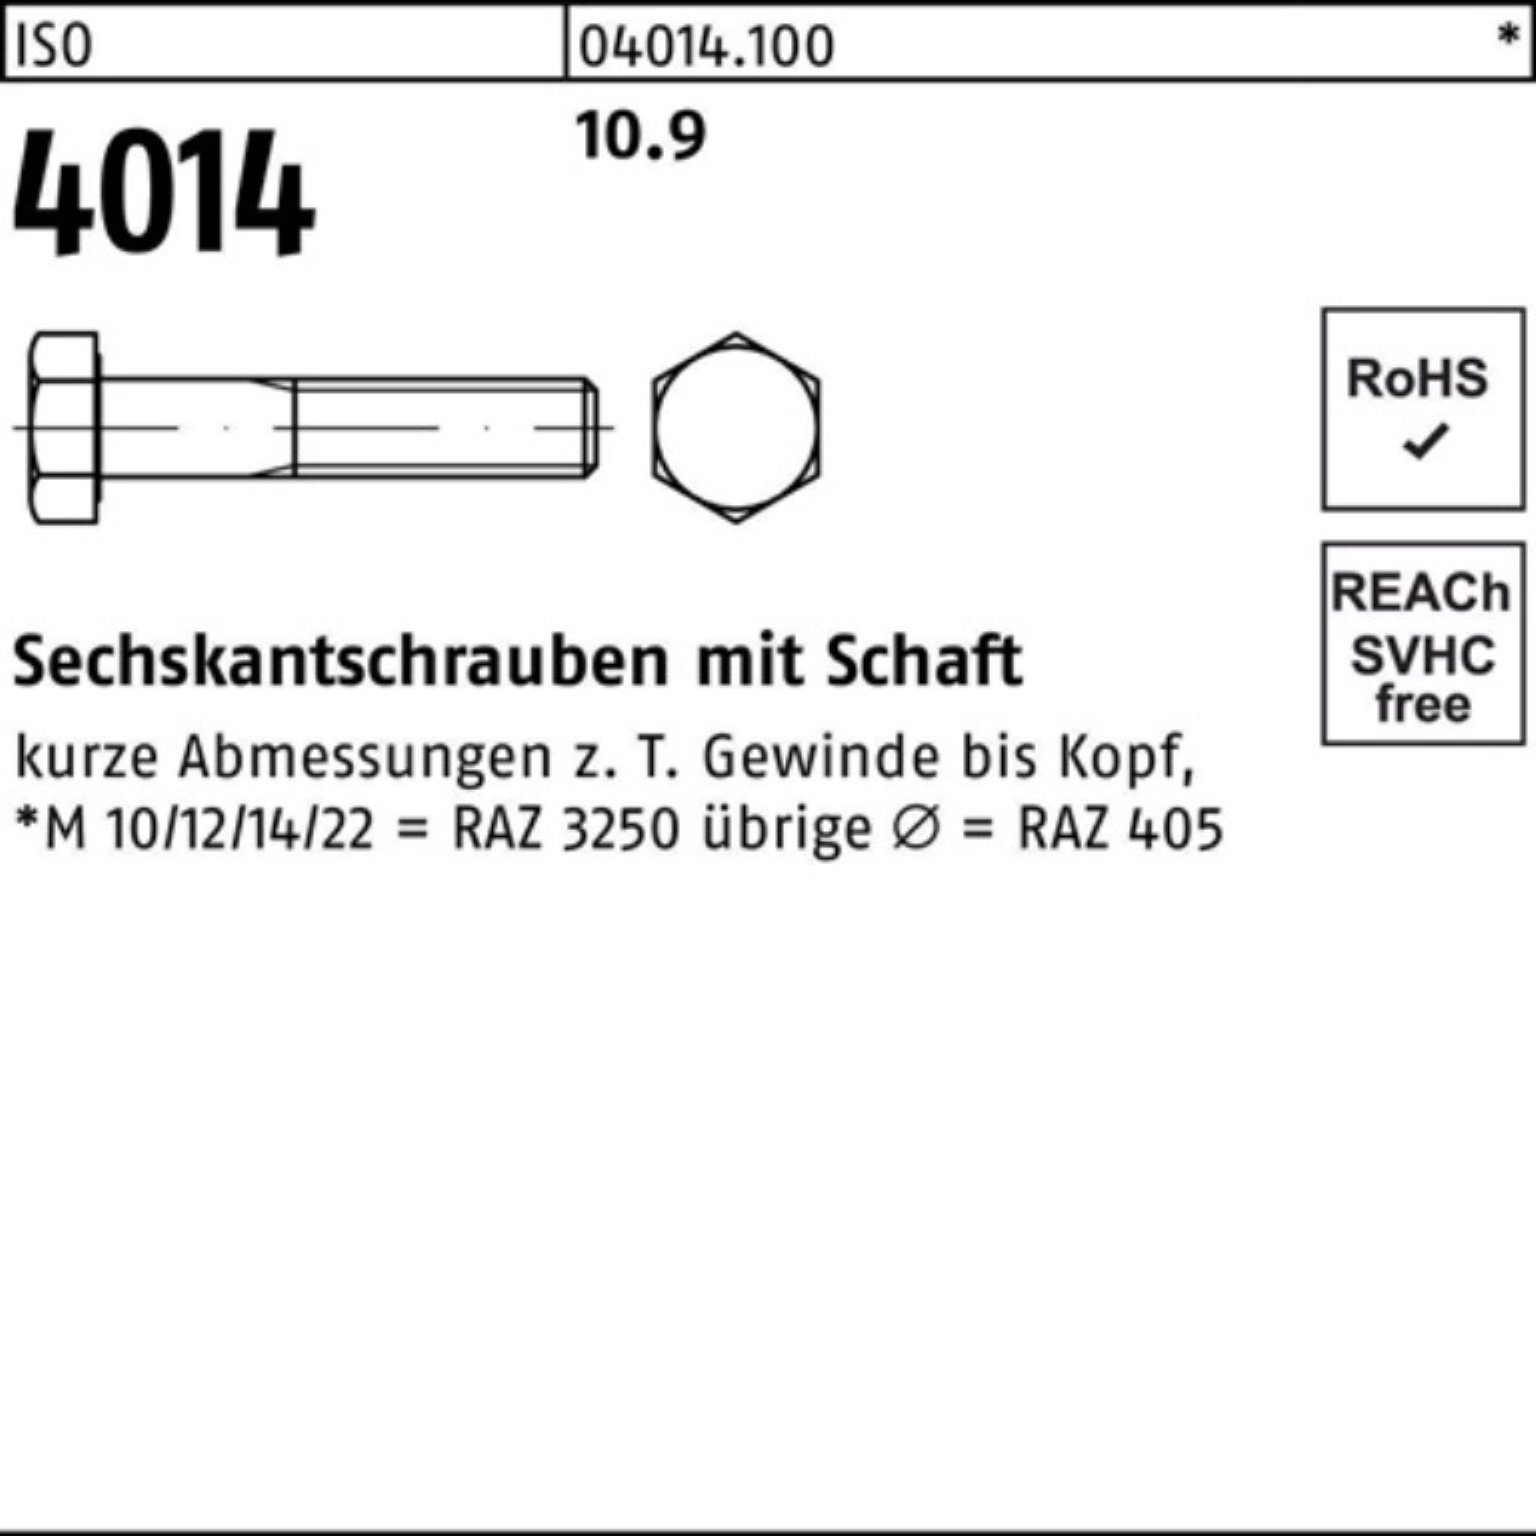 Stück 50 Sechskantschraube 4014 M12x Sechskantschraube 10.9 150 ISO Bufab Pack 100er I Schaft